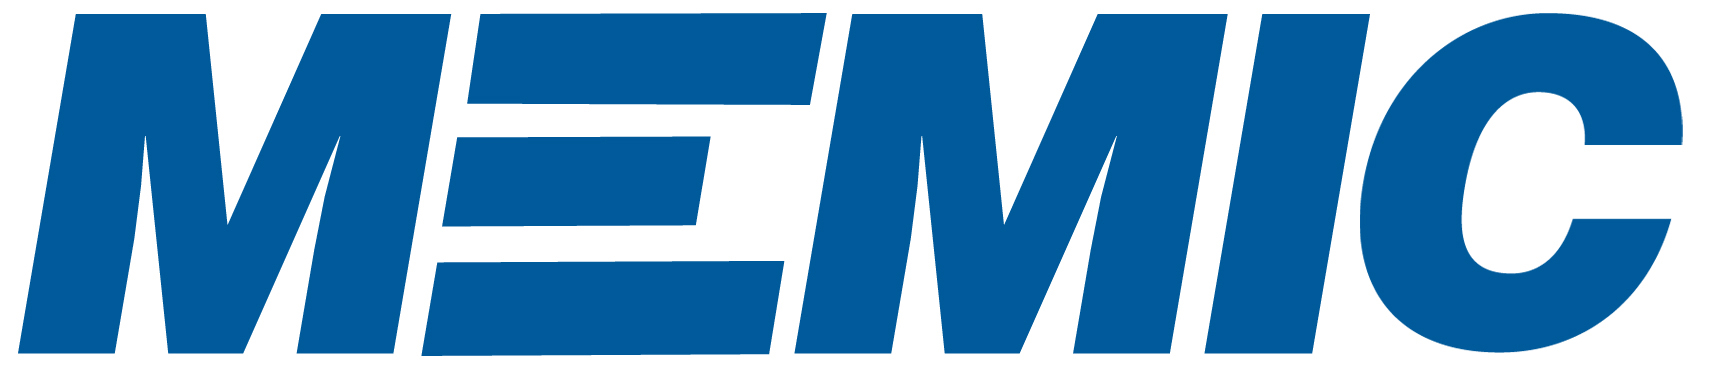 MEMIC-logo-resized-c.jpg